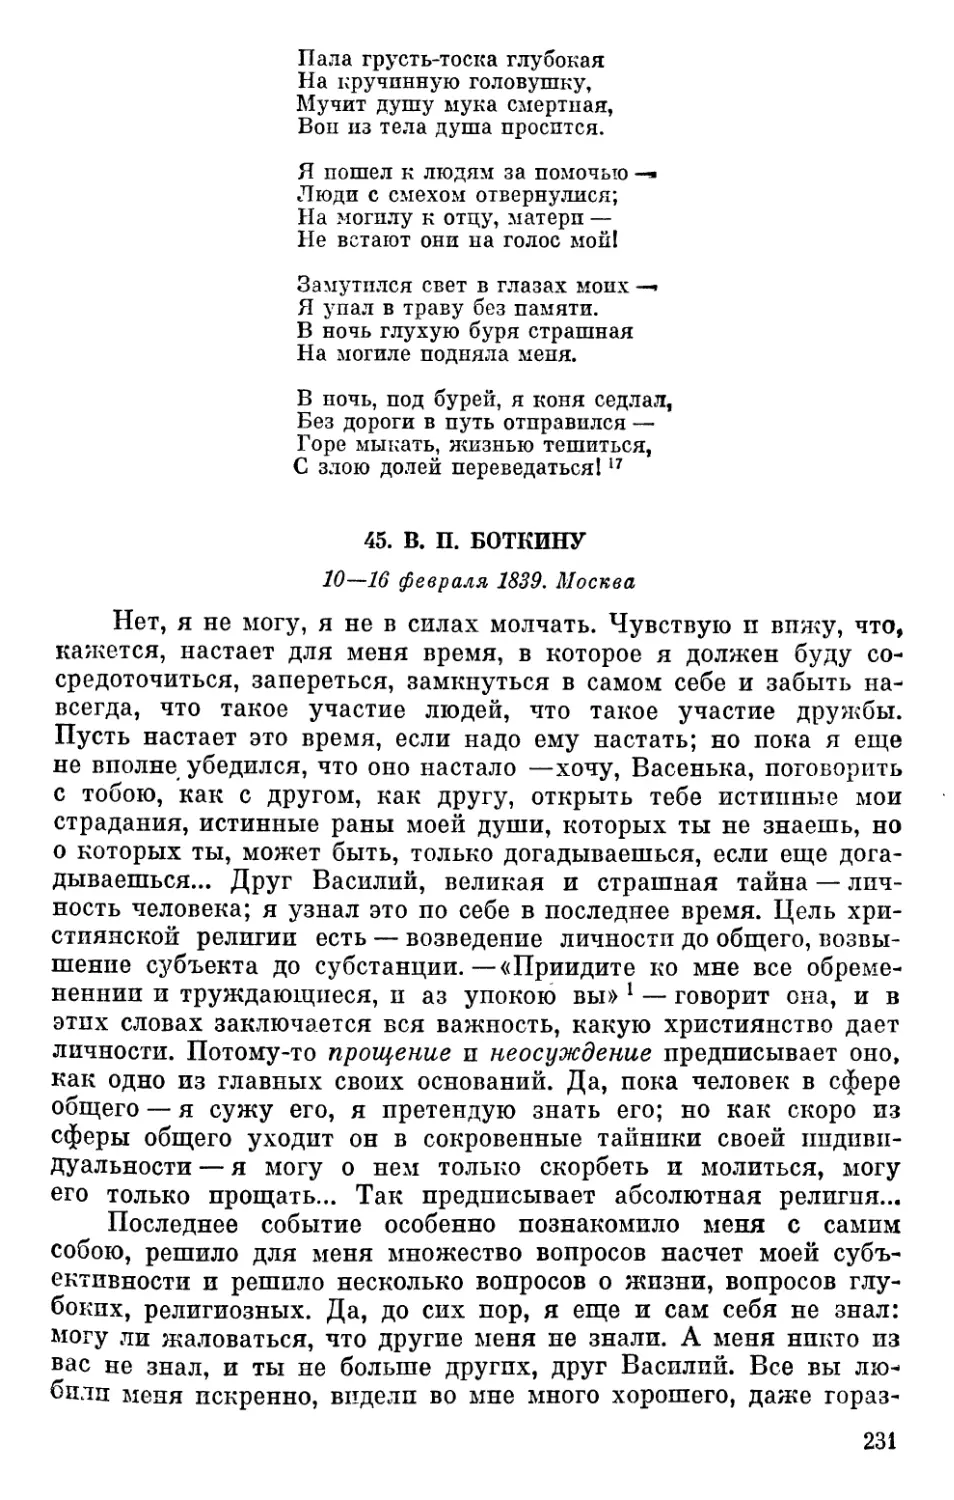 45. В. П. Боткину. 10—16 февраля 1839